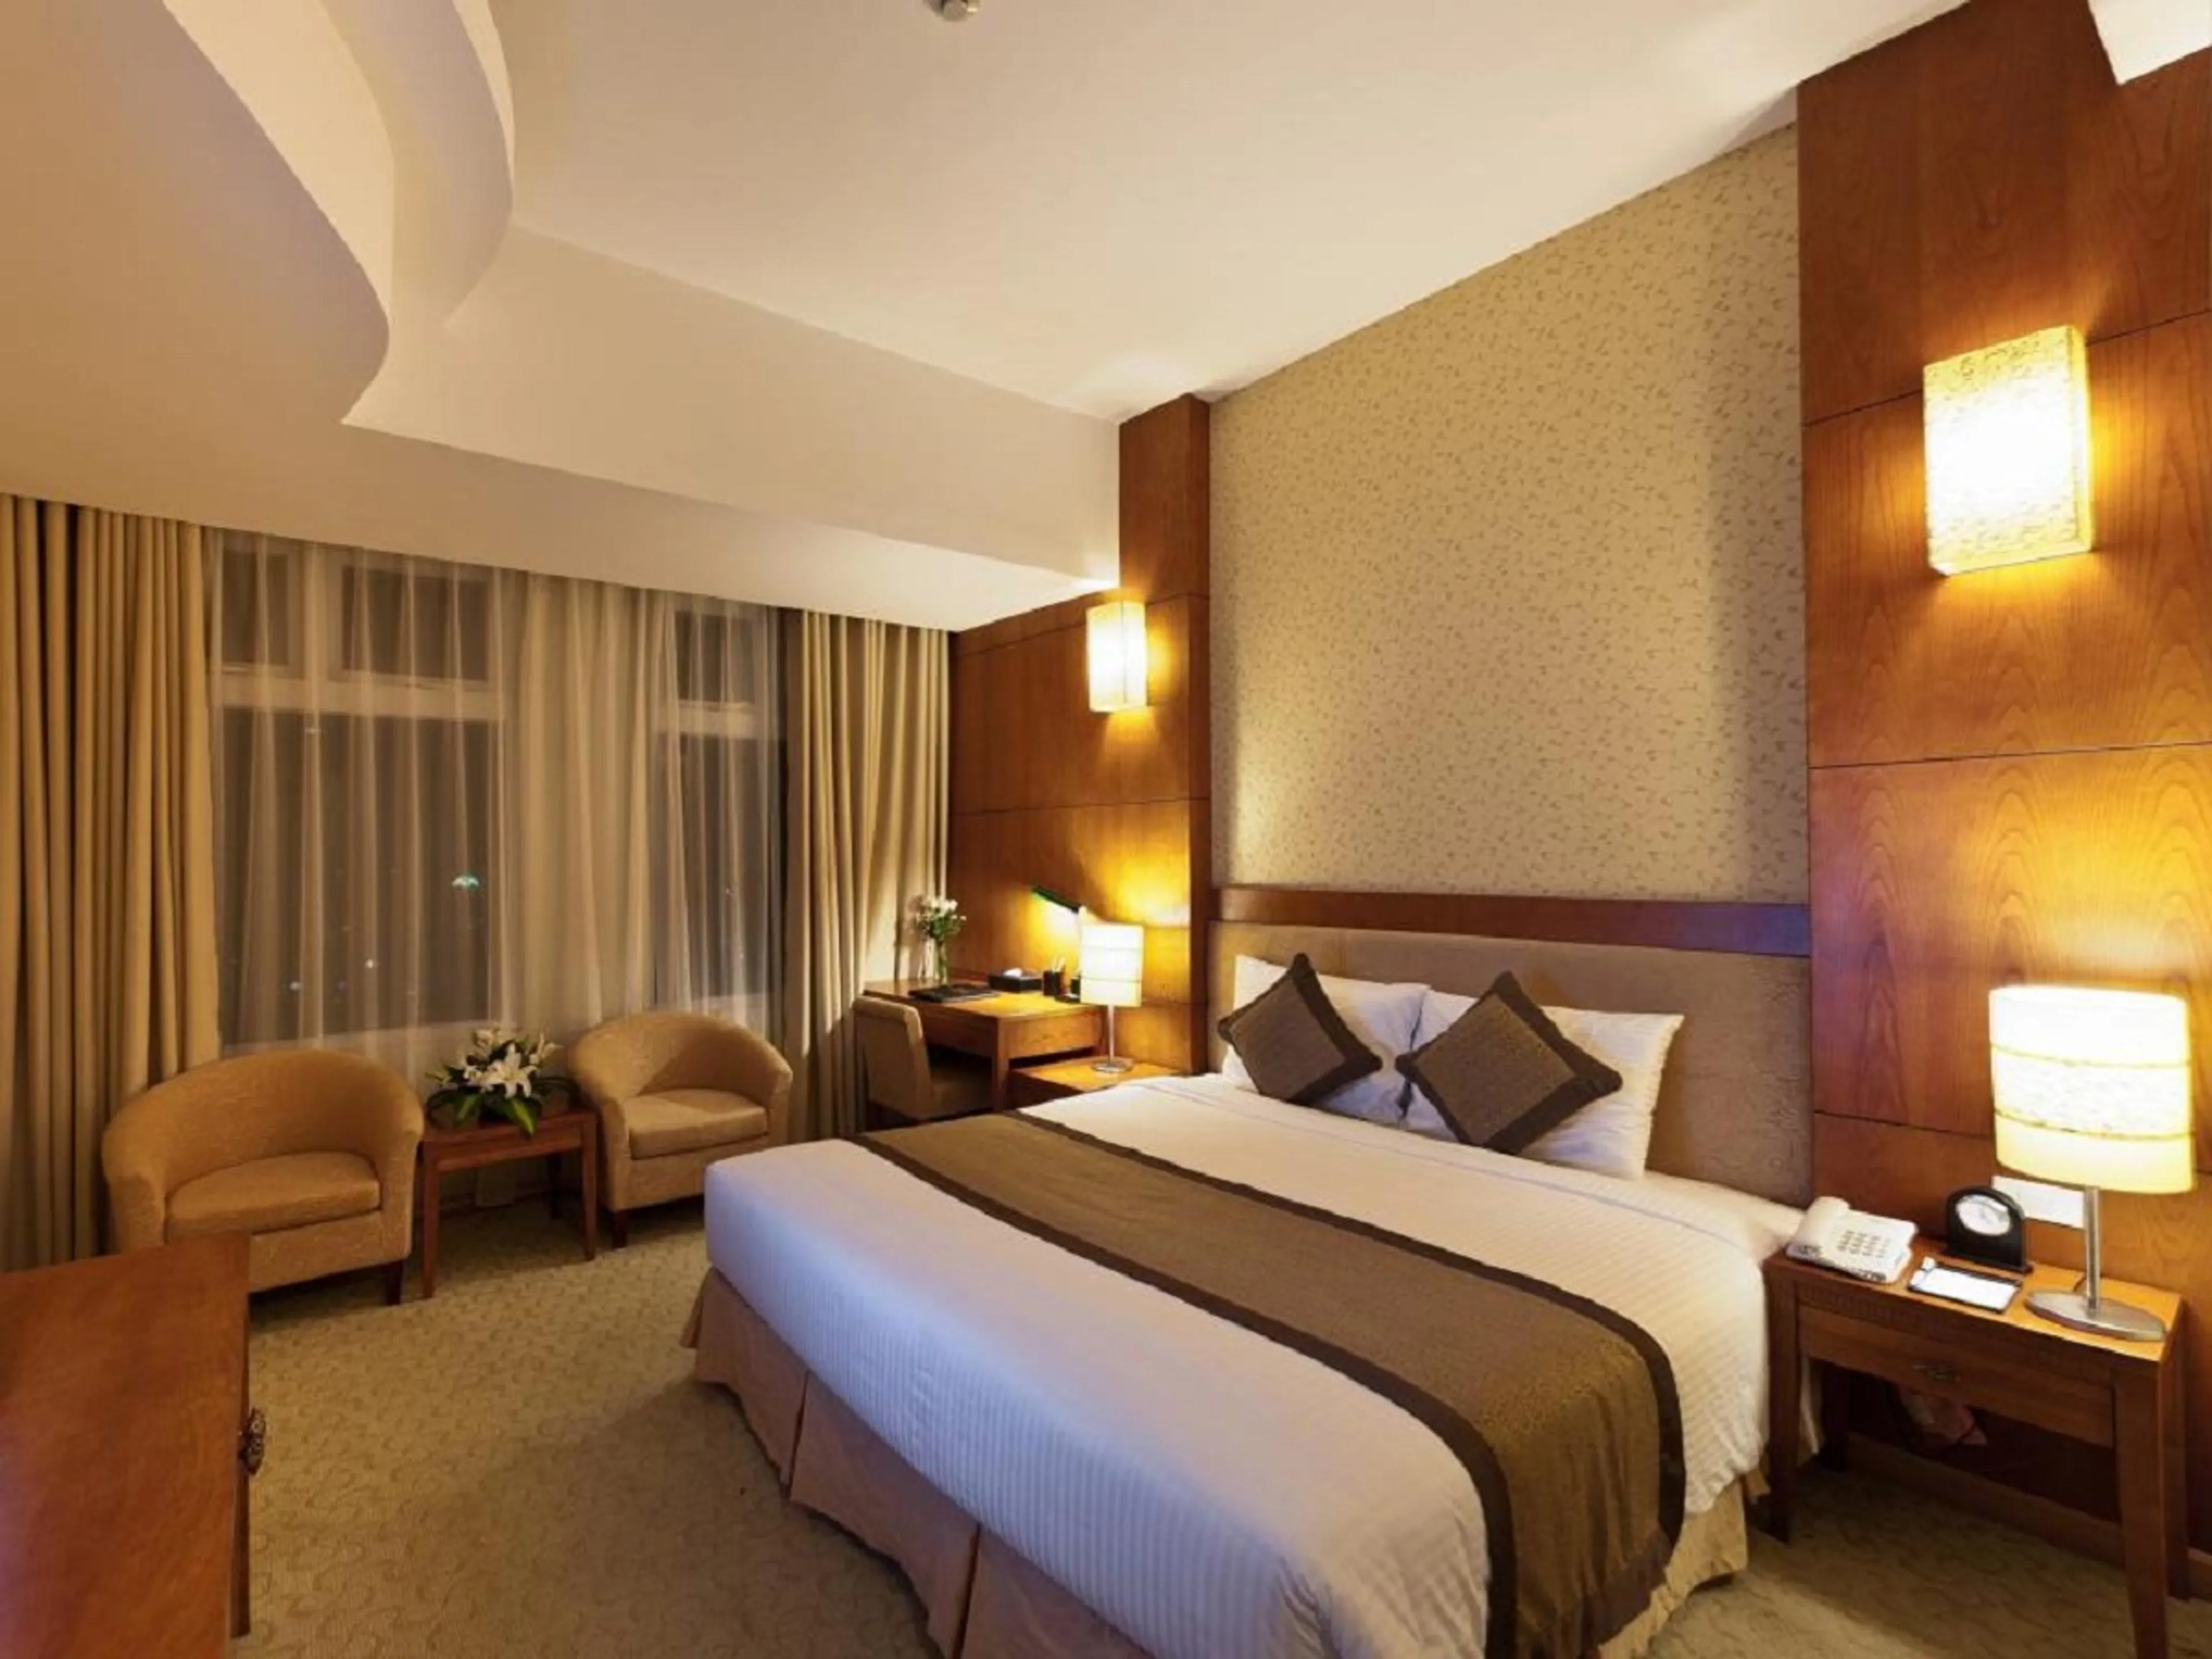 5 khách sạn chất lượng tốt, giá rẻ tại Lạng Sơn